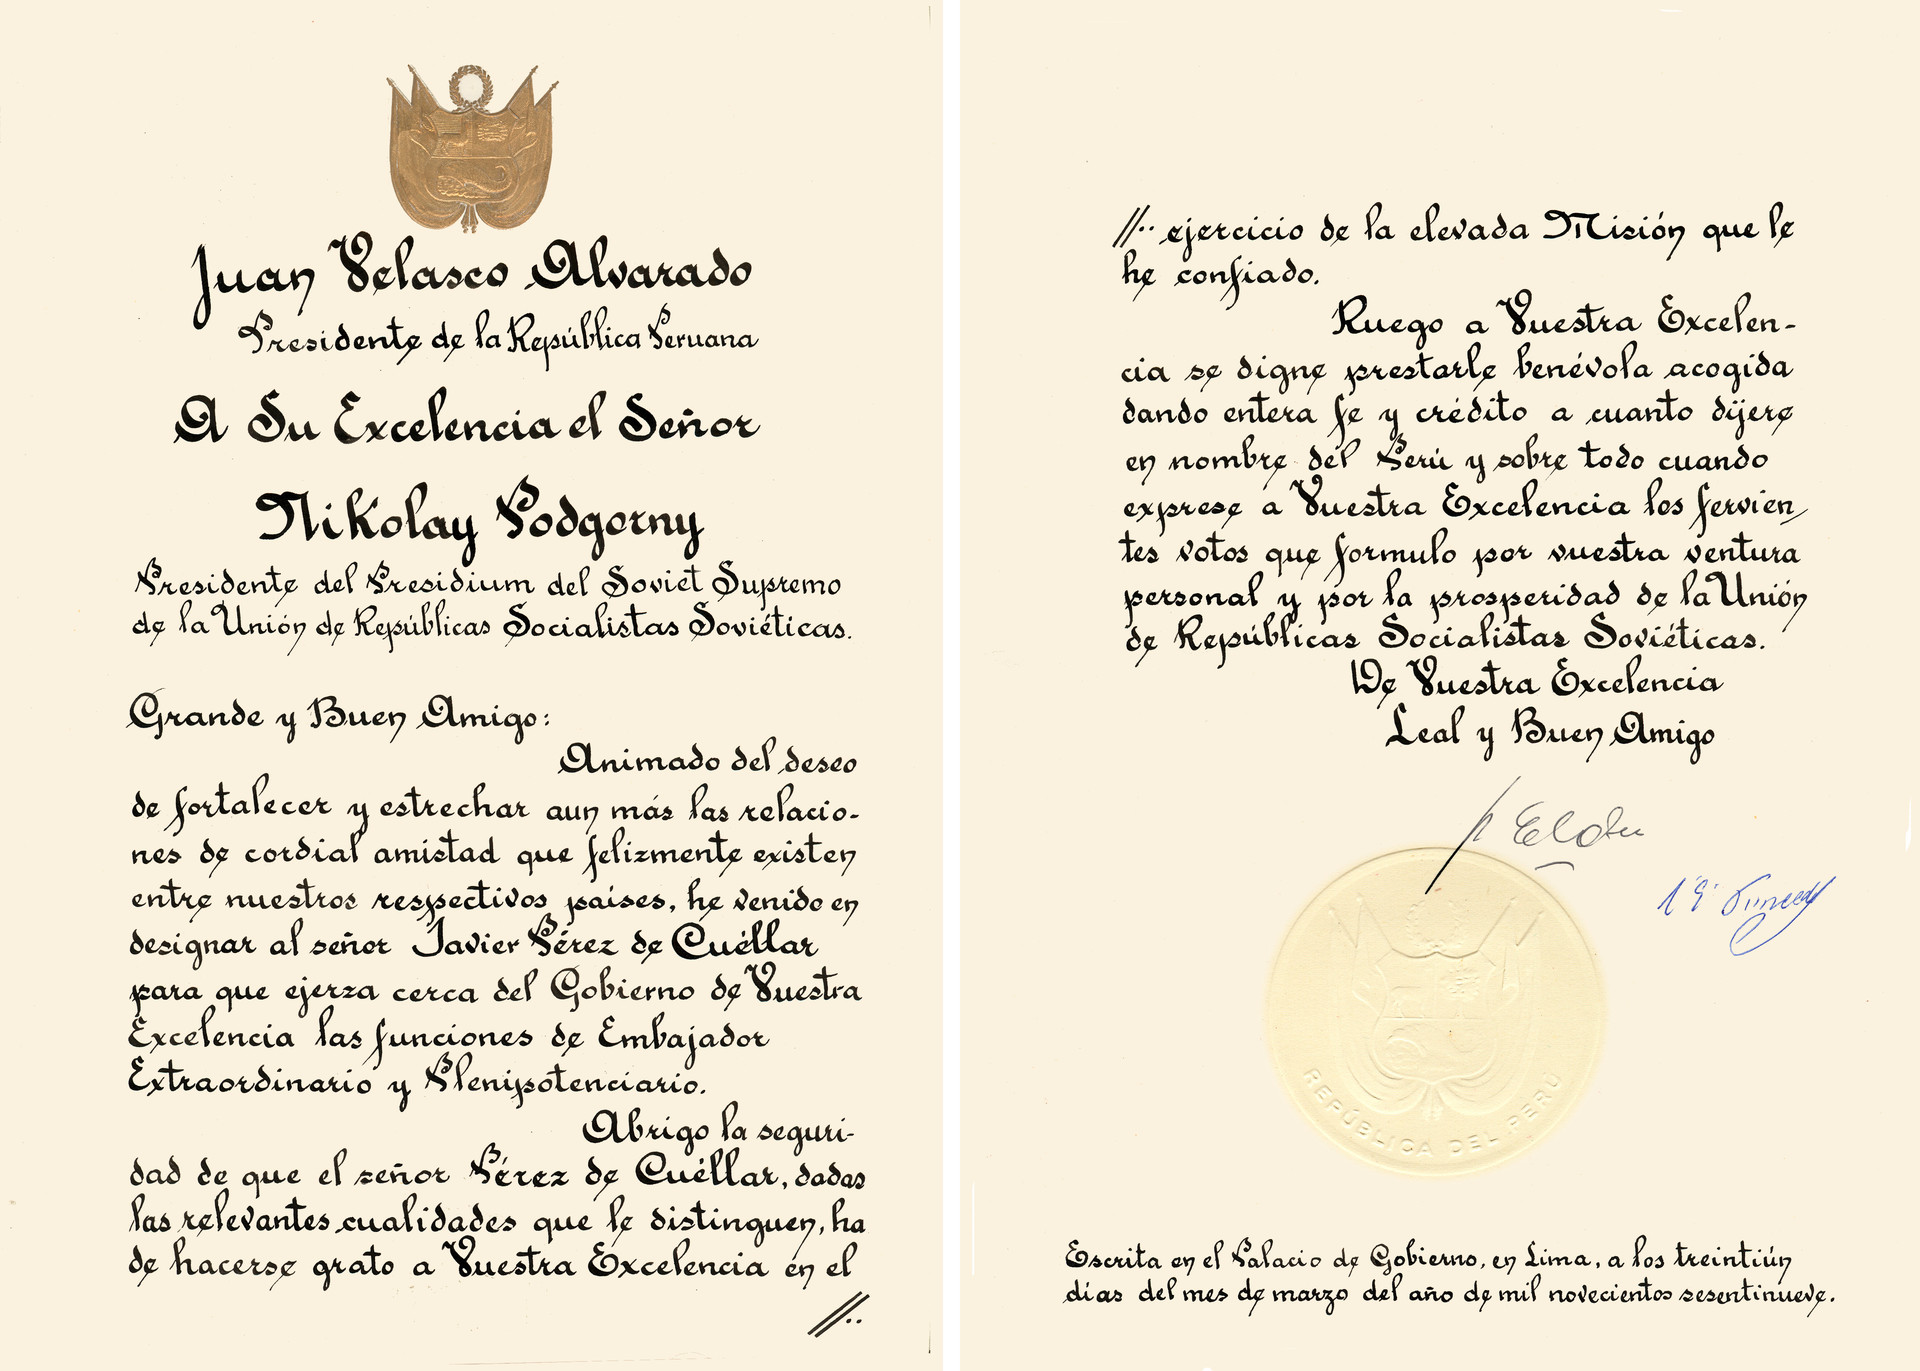 Cartas credenciales del embajador extraordinario y plenipotenciario de Perú en la URSS, Javier Pérez de Cuéllar. 31 de marzo de 1969.